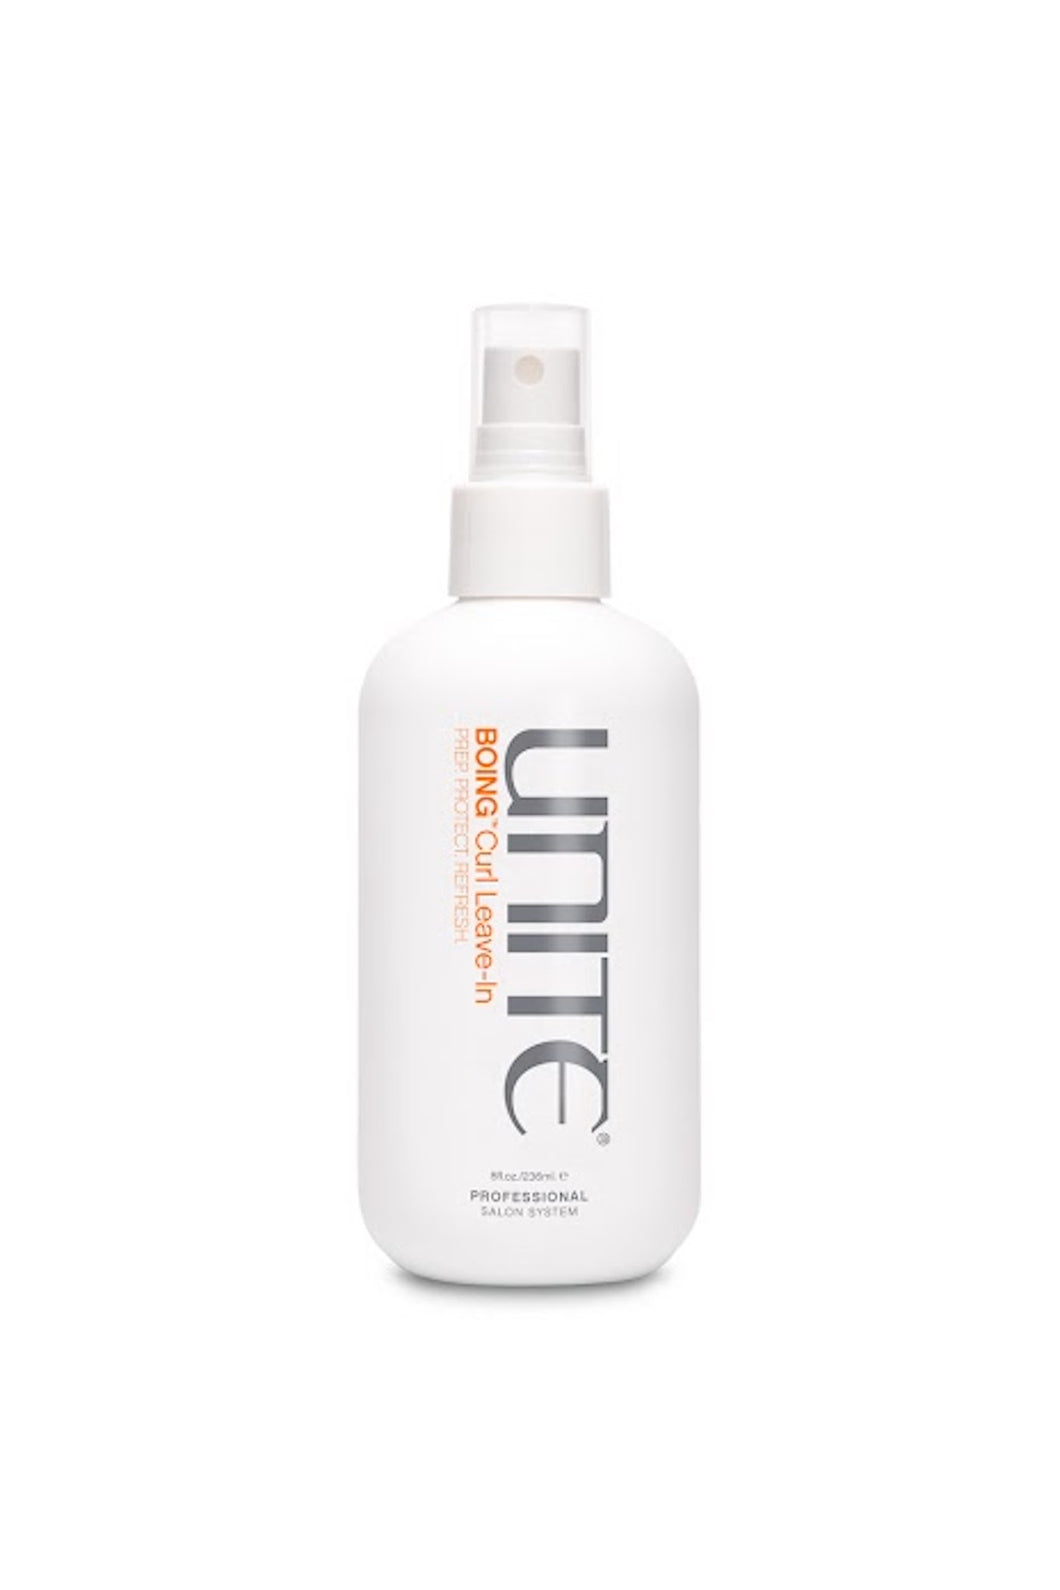 Unite - BOING Leave-In Conditioner white non-aerosol spray bottle 8 oz